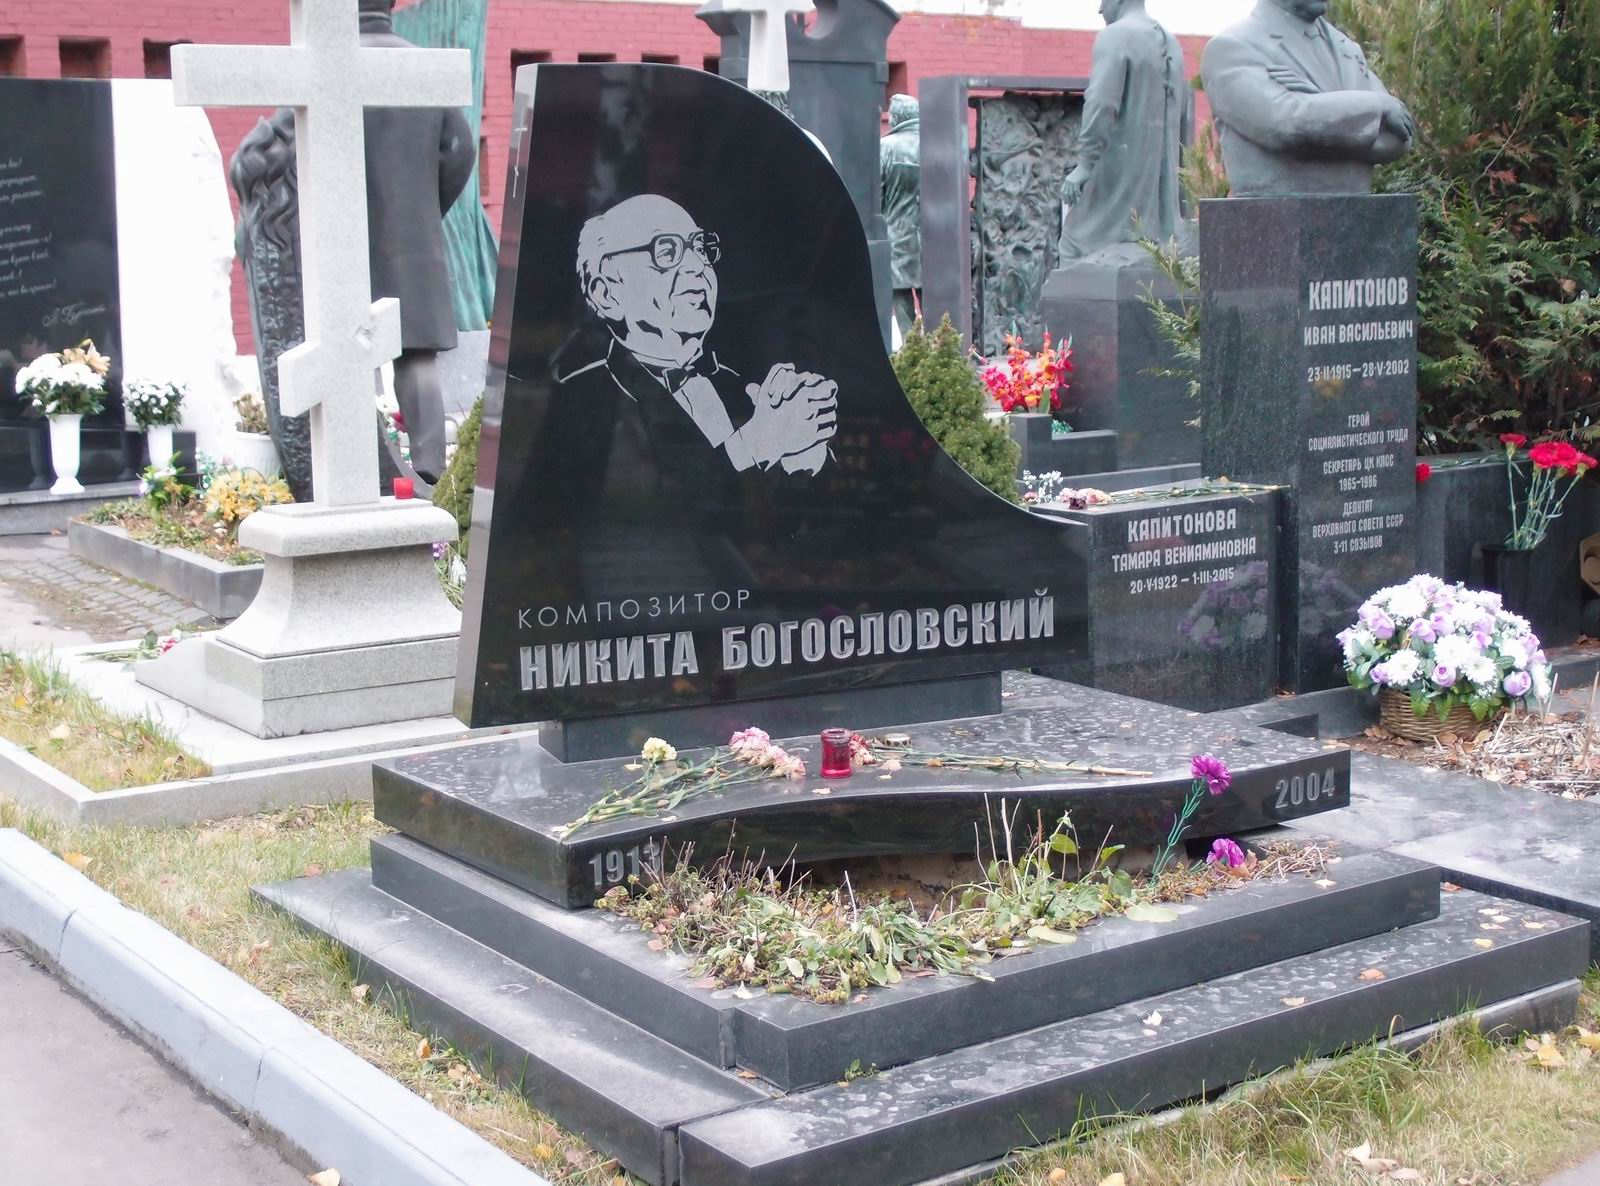 Памятник на могиле Богословского Н.В. (1913-2004), худ. А.Ованесян, арх. Е.Копелиович, на Новодевичьем кладбище (10-7-20).